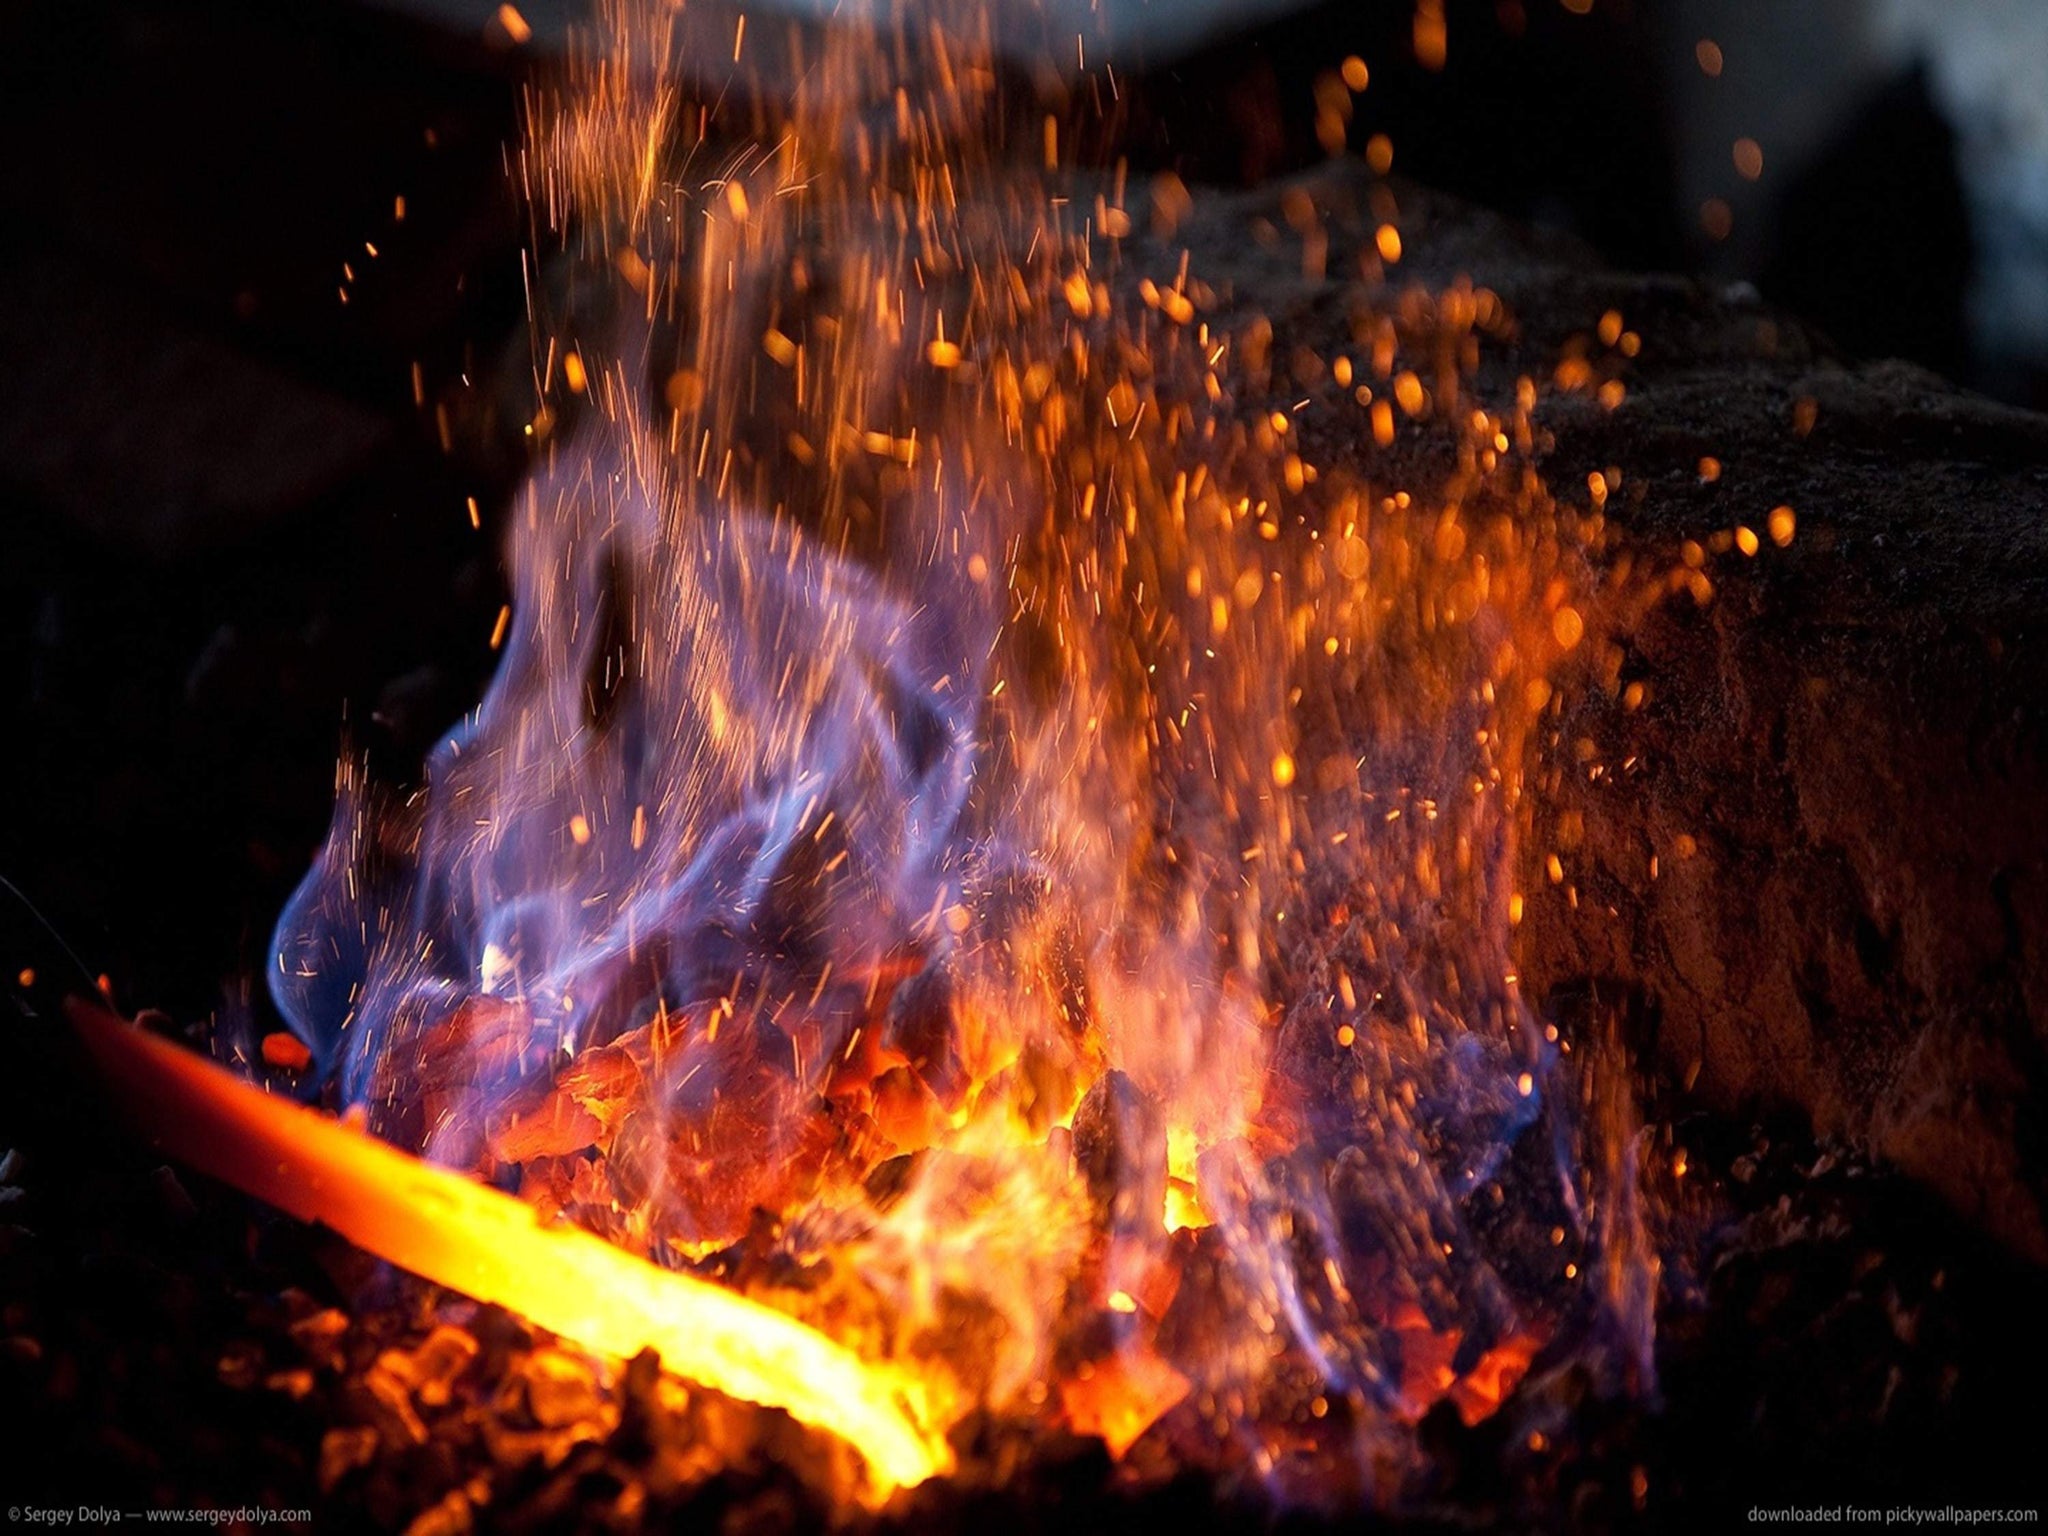 Forge et traitements thermiques des lames